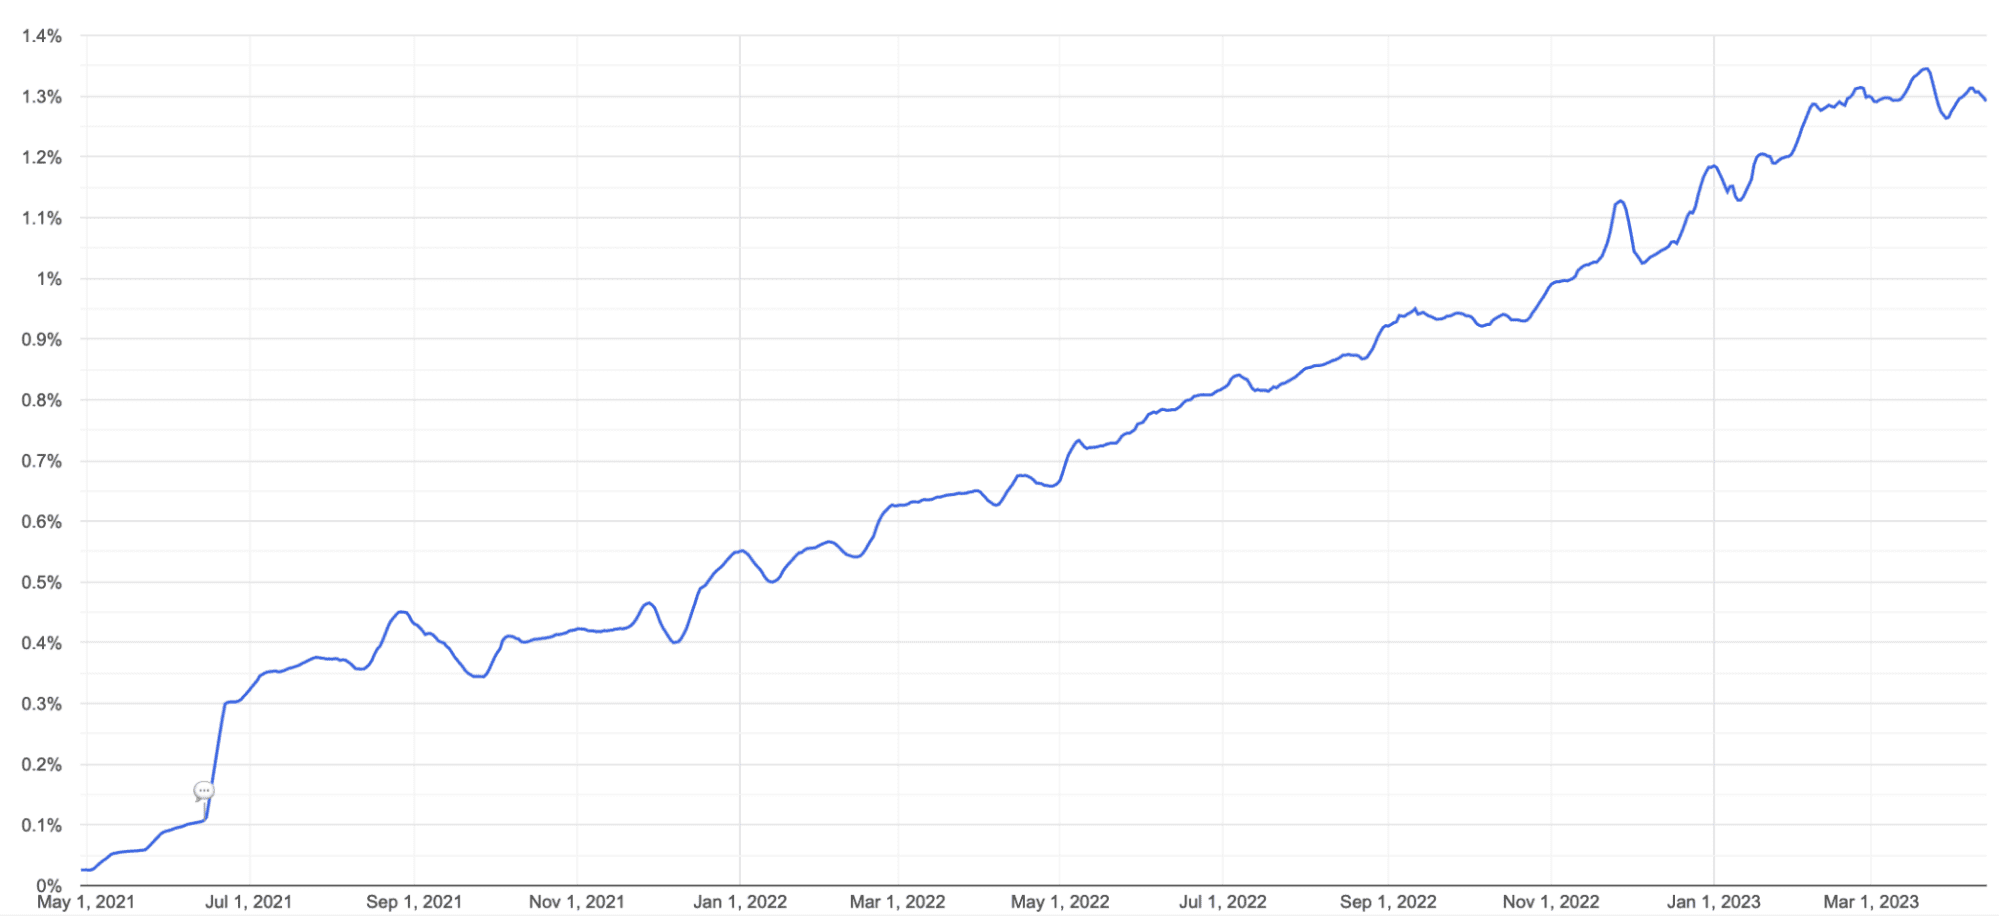 Mayıs 2021 ile Mart 2023 arasında Chrome&#39;da AVIF kullanımının çizgi grafiği. Destek istikrarlı bir şekilde% 0&#39;dan %1,4&#39;ün biraz altına yükselmiştir.